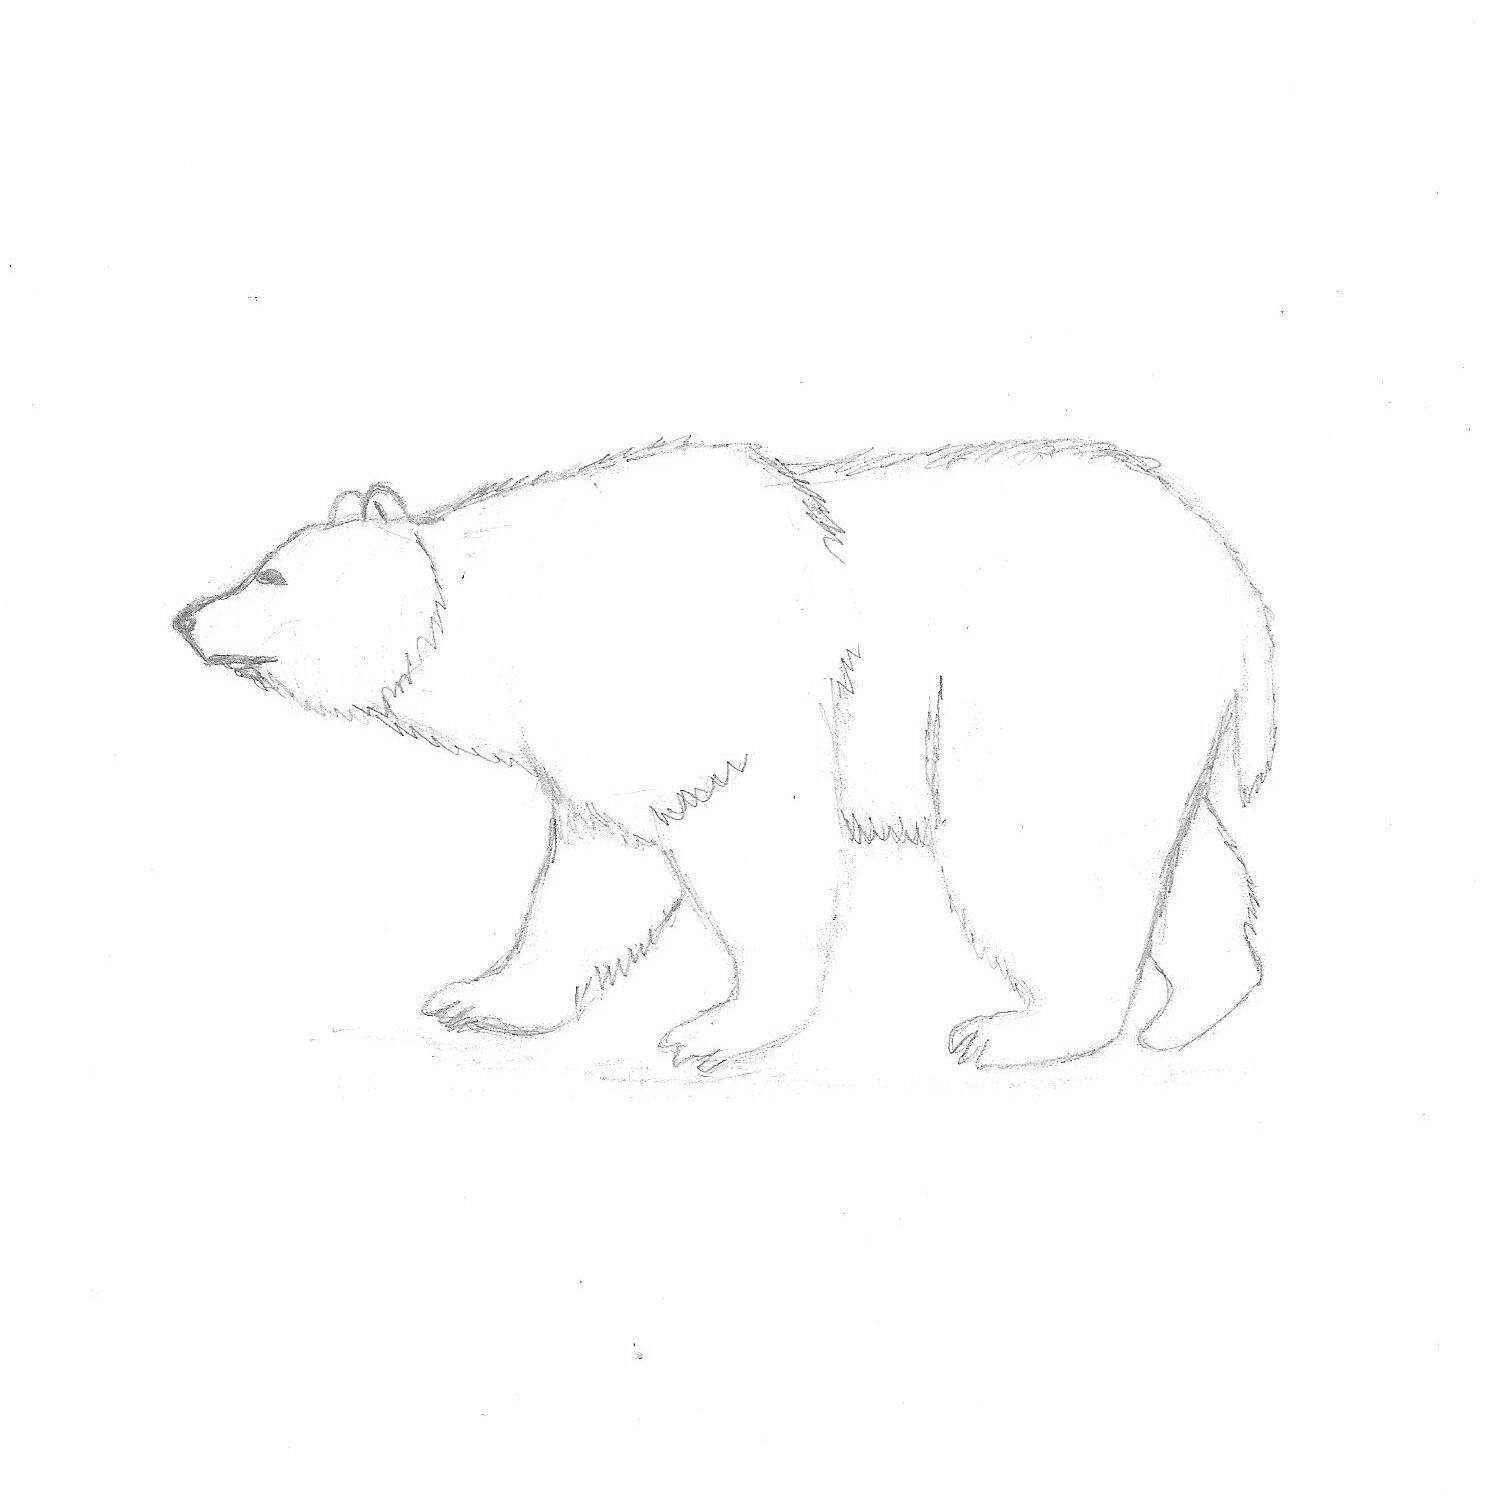 бурый медведь картинки нарисованные